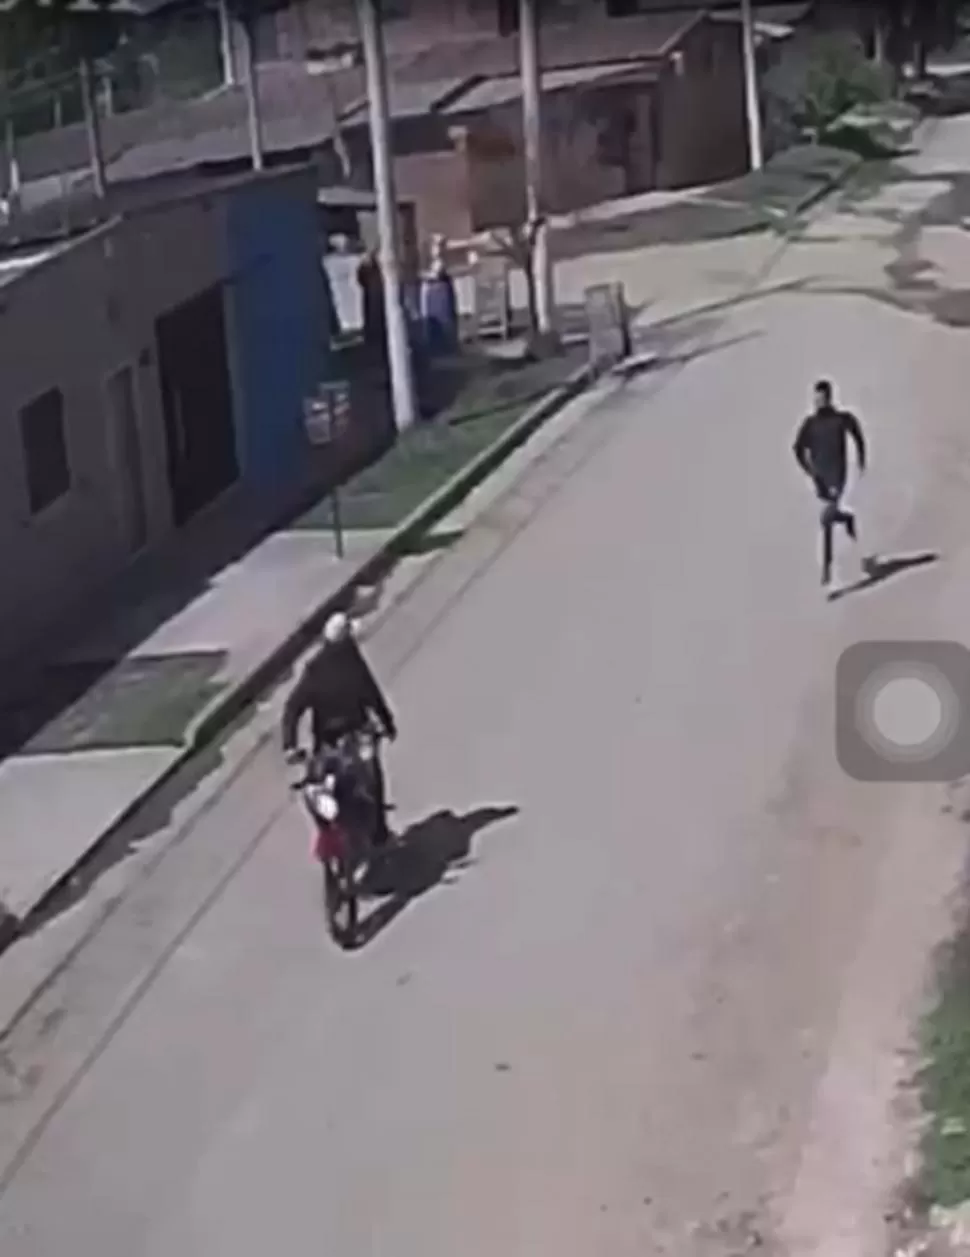 EN PLENA FUGA. El asaltante que hirió de dos balazos al comerciante corre a buscar a su cómplice que lo espera con la moto encendida. 